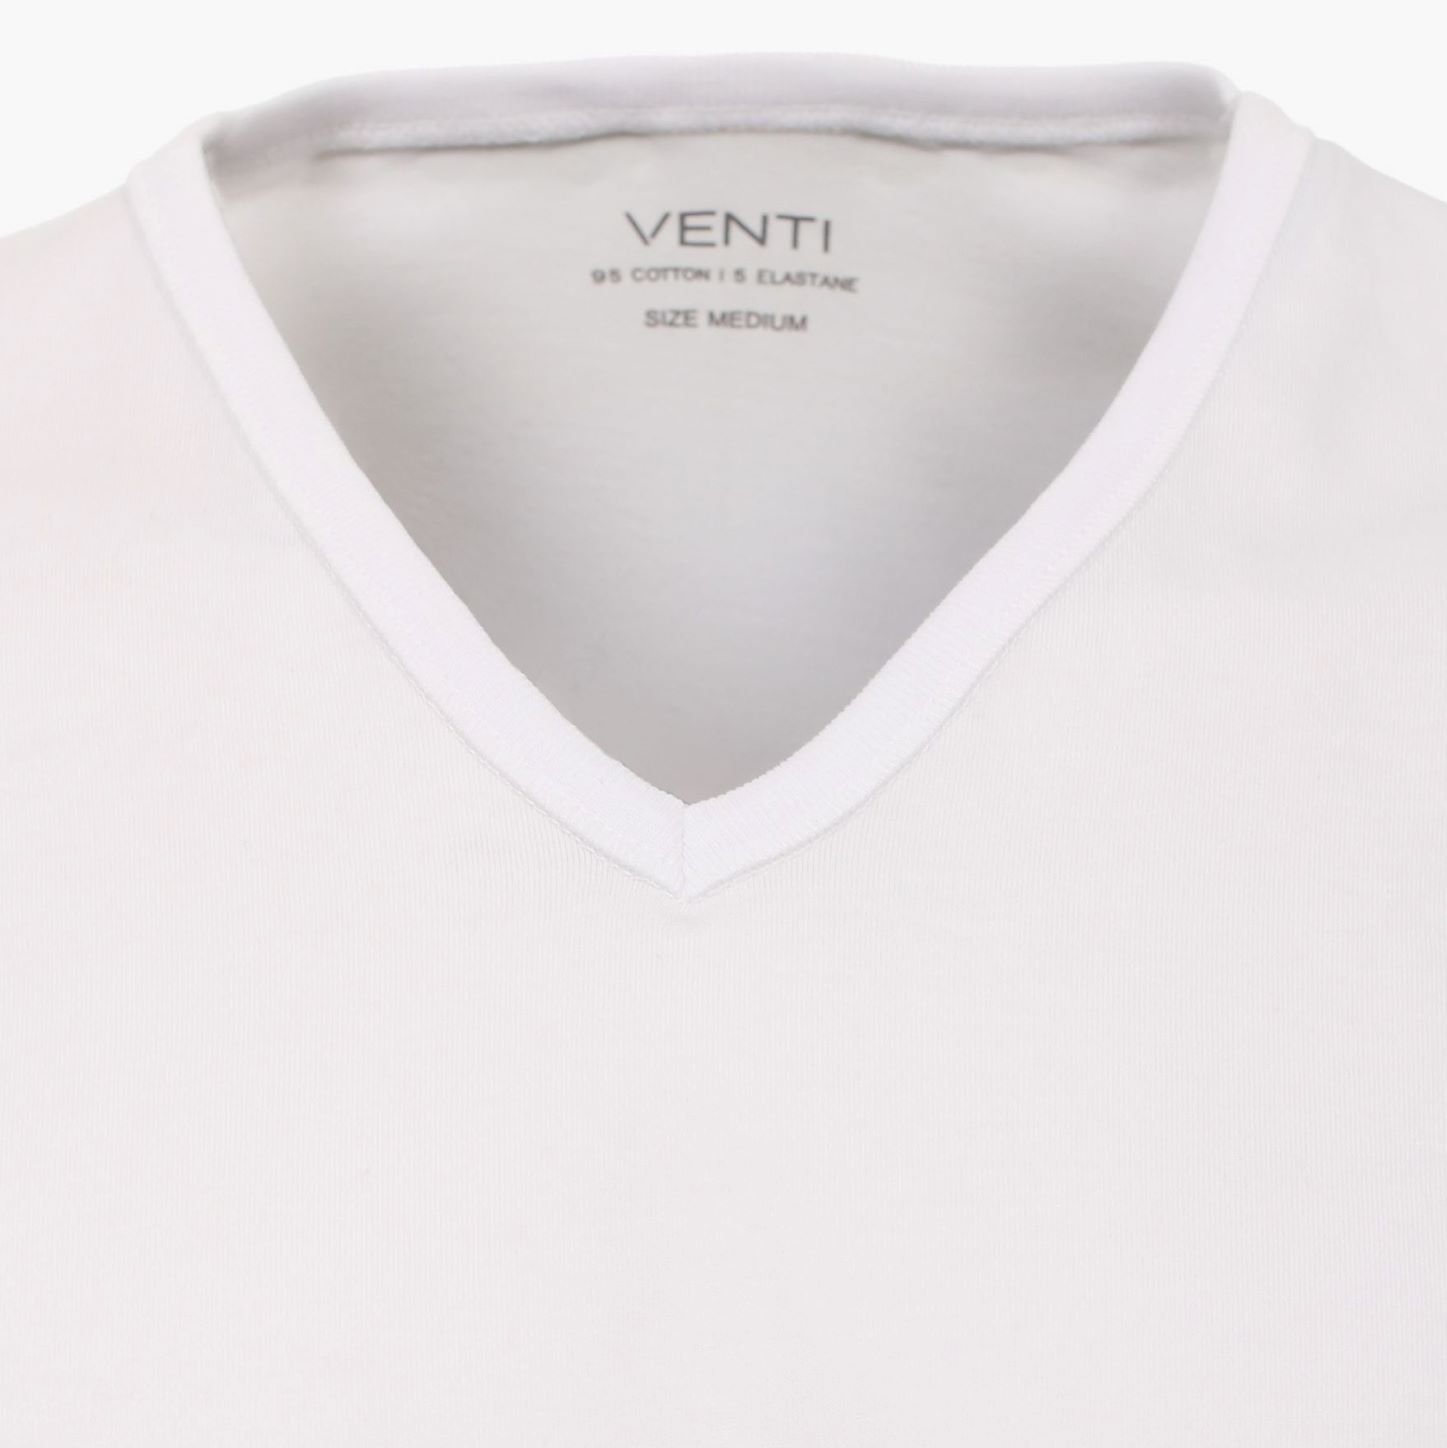 Футболка Venti 012600-001 под рубашку белая, в упаковке 2 шт.